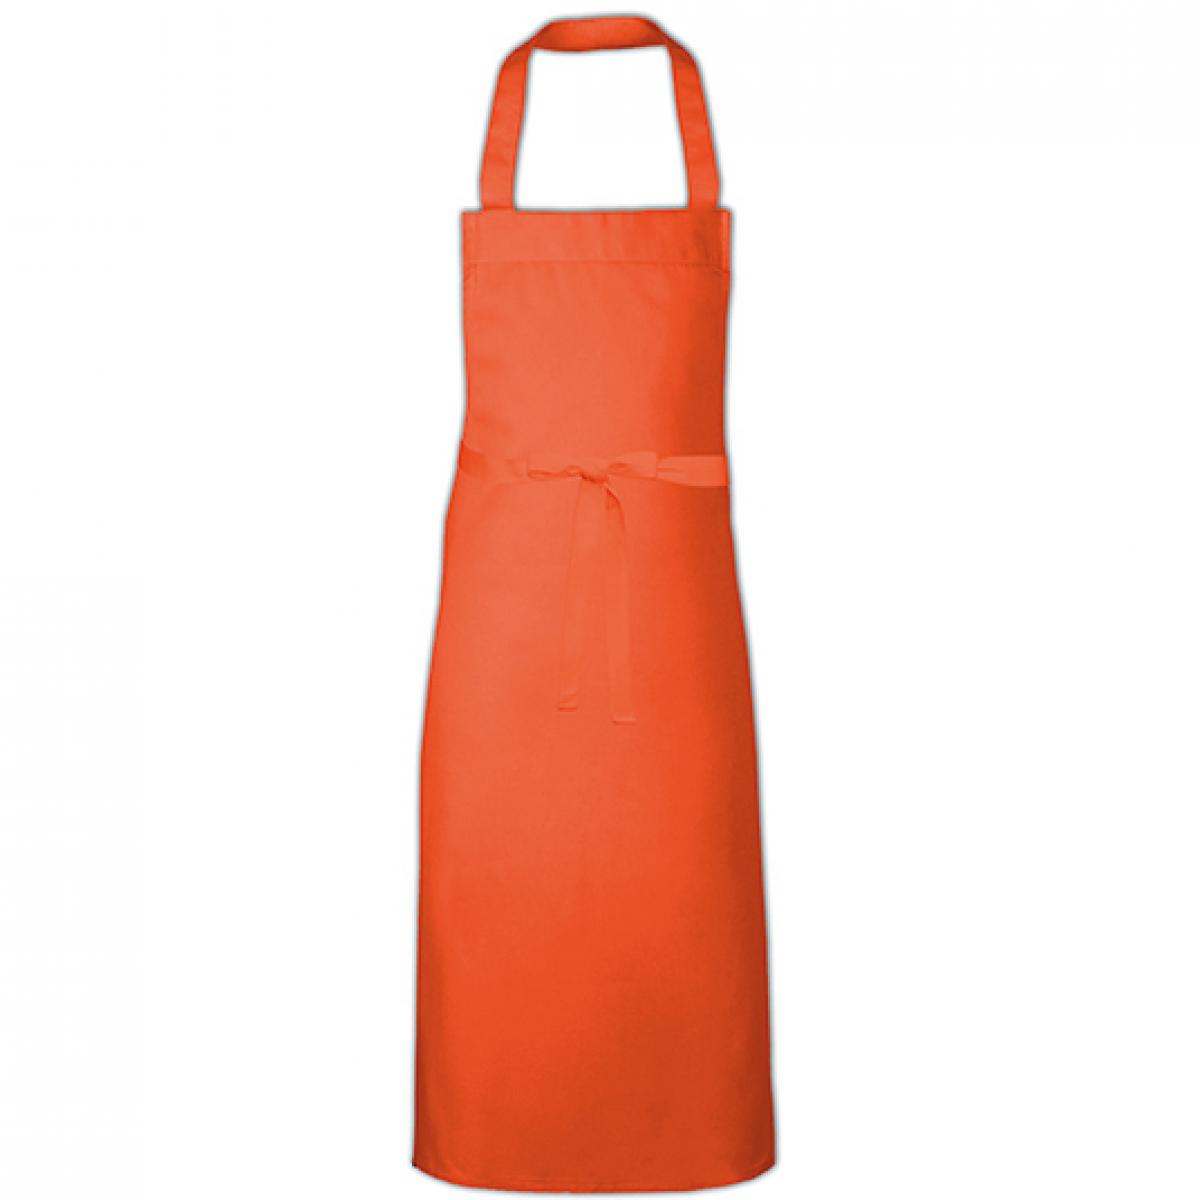 Hersteller: Link Kitchen Wear Herstellernummer: BBQ11073 Artikelbezeichnung: Barbecue Apron XL - 73 x 110 cm - Waschbar bis 60 °C Farbe: Orange